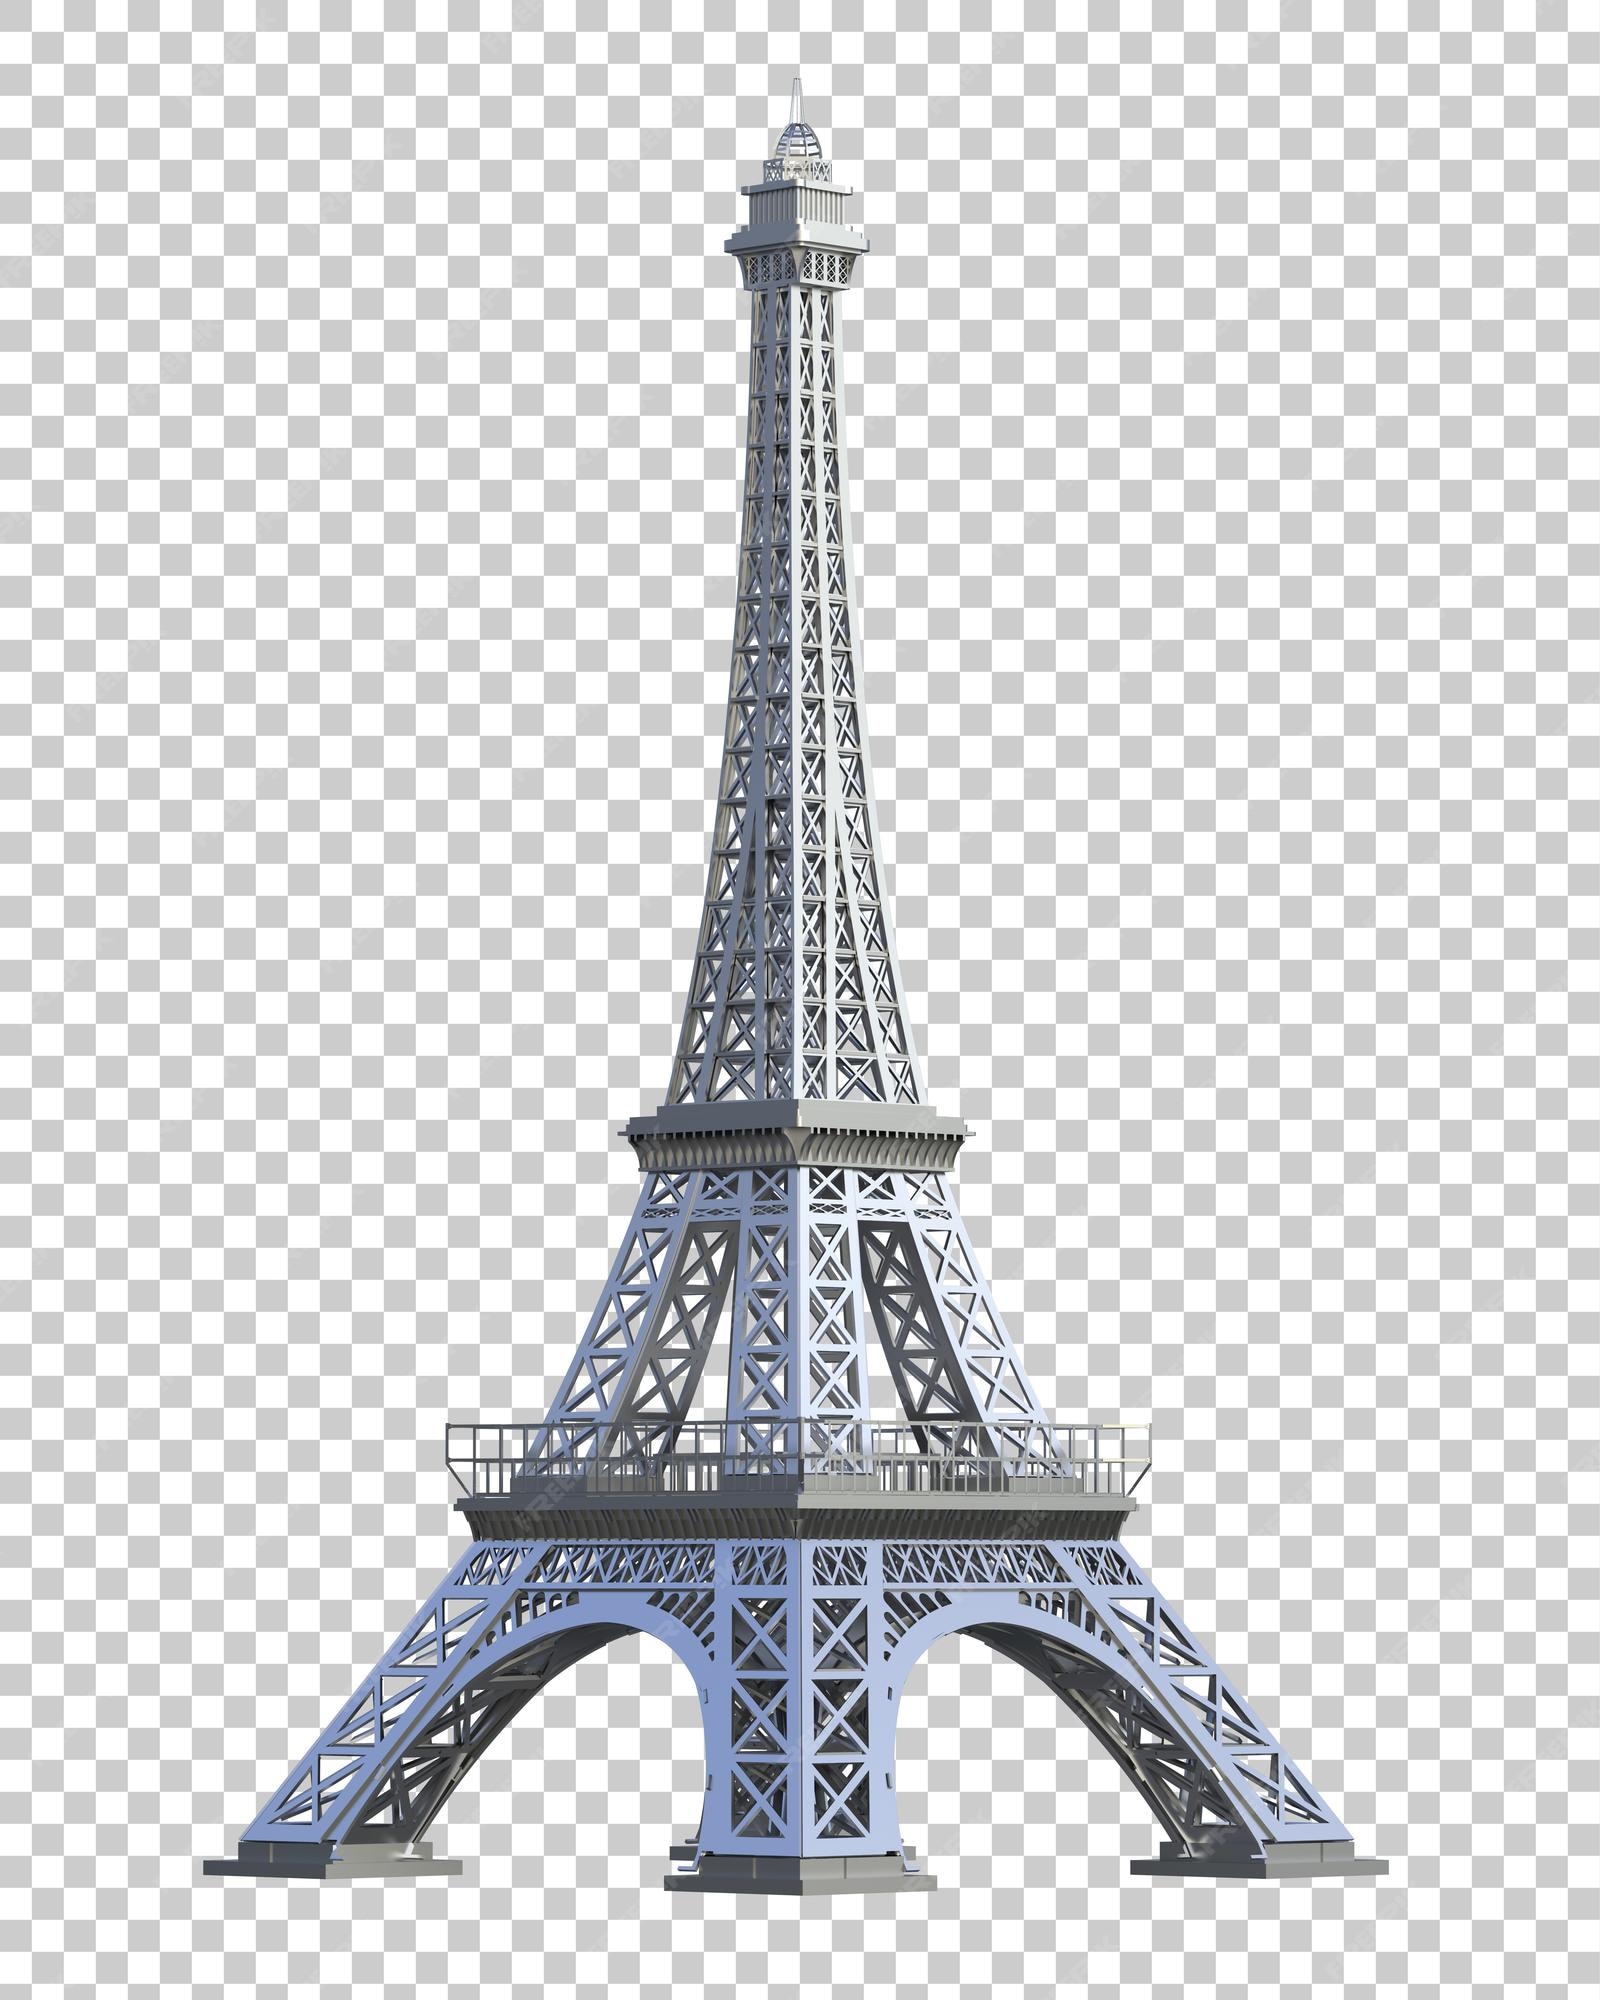 Tháp Eiffel được render 3D trên nền trong suốt: Với hình ảnh Tháp Eiffel 3D trong suốt, bạn sẽ mơ mộng như đang đứng trên đỉnh của tháp vạn vật nổi tiếng này. Với công nghệ render 3D hiện đại, bạn có thể nhìn thấy chi tiết rất chân thật của Tháp Eiffel. Trong khi chiêm ngưỡng bức tranh đầy màu sắc này, bạn không thể ngừng được nhặt những chi tiết mới và độc đáo!